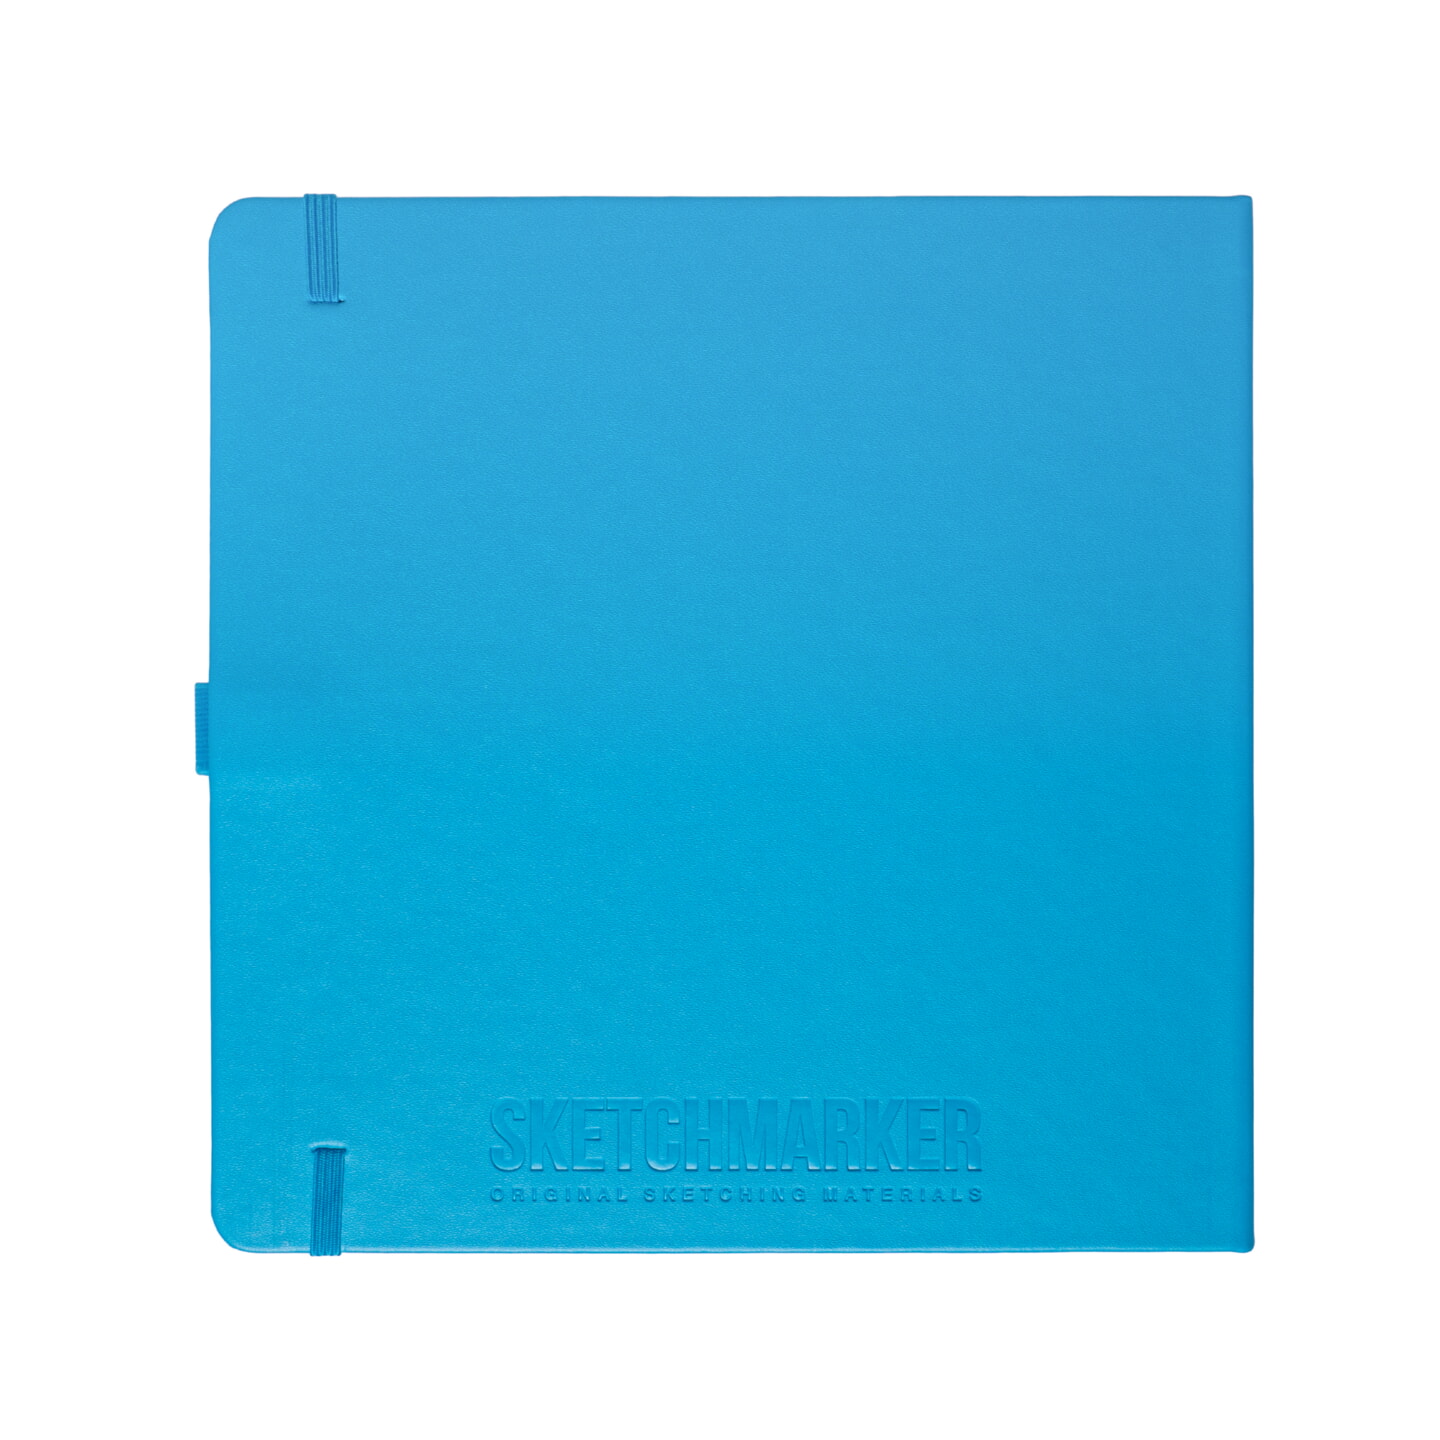 Блокнот для зарисовок Sketchmarker 140г/кв.м 20*20cм 80л твердая обложка Синий Карибский